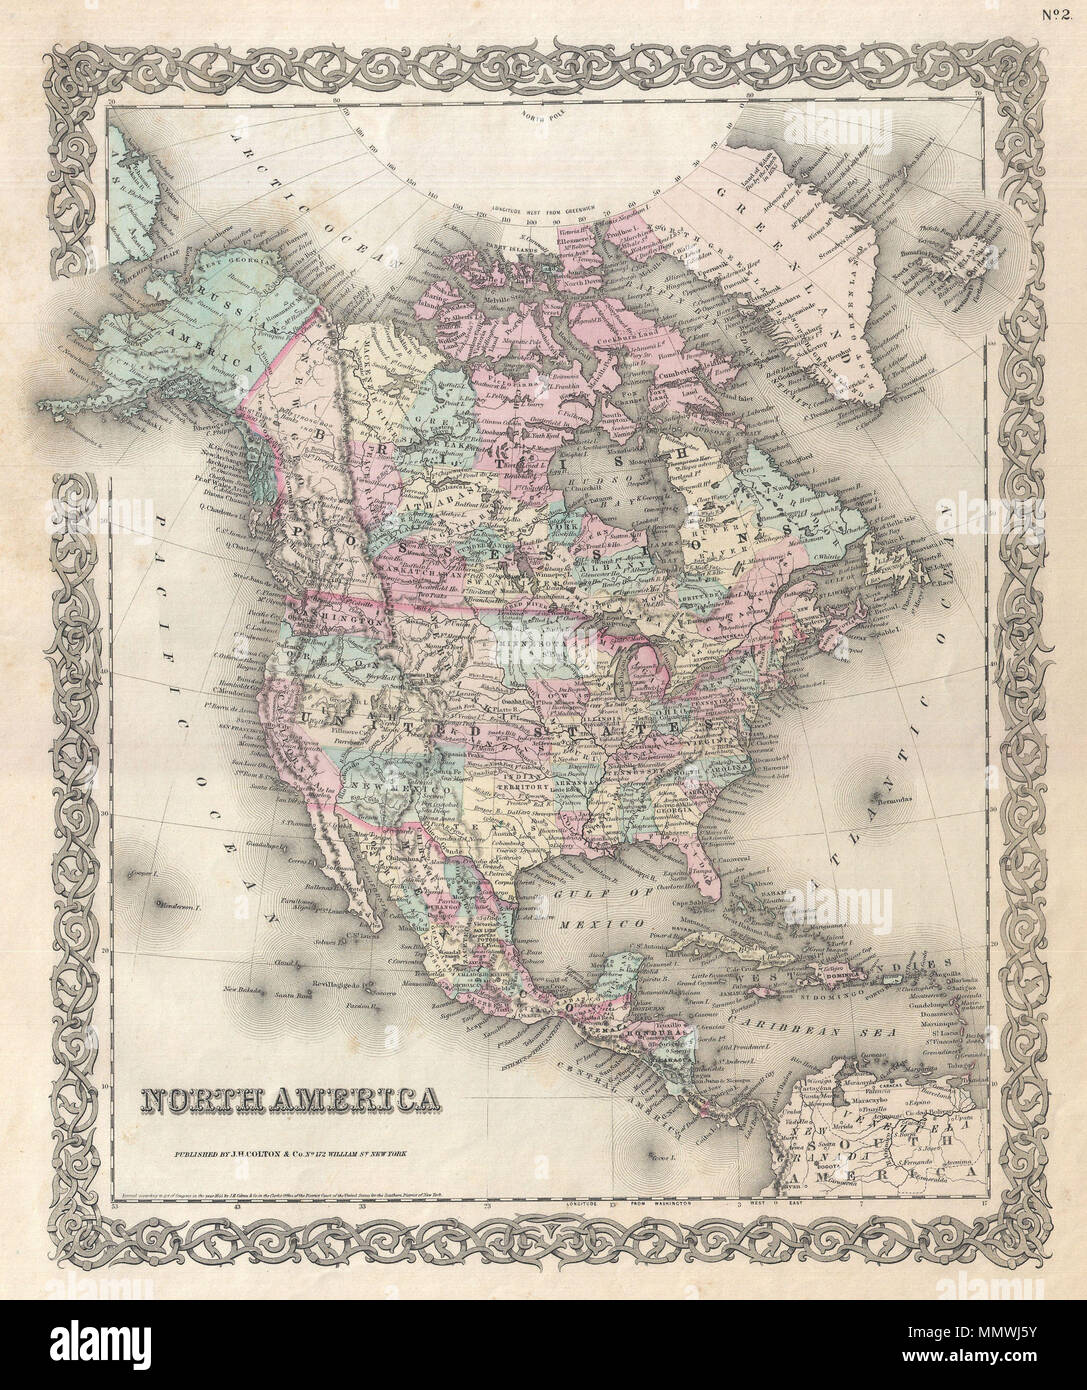 . Anglais : une excellente première édition Exemple de Colton est rare carte de l'Amérique du Nord. Couvre le continent de l'Amérique du Sud à l'Arctique, y compris les États-Unis, le Canada, le Mexique, l'Amérique centrale et les Antilles. La partie américaine de cette carte contient un début de configuration territoriale de la Transmississippi. Le Nebraska est illustré au maximum de sa, l'extension du Kansas à la frontière canadienne. Montana, Wyoming, Colorado, l'Arizona, le Colorado, la Virginie de l'Ouest, et du Nevada n'apparaissent pas encore sur la carte. Note la demande de Moscou à l'Alaska. 4610 identifie, Fremont's Peak, Mt. Rainier, Mt. Banque D'Images